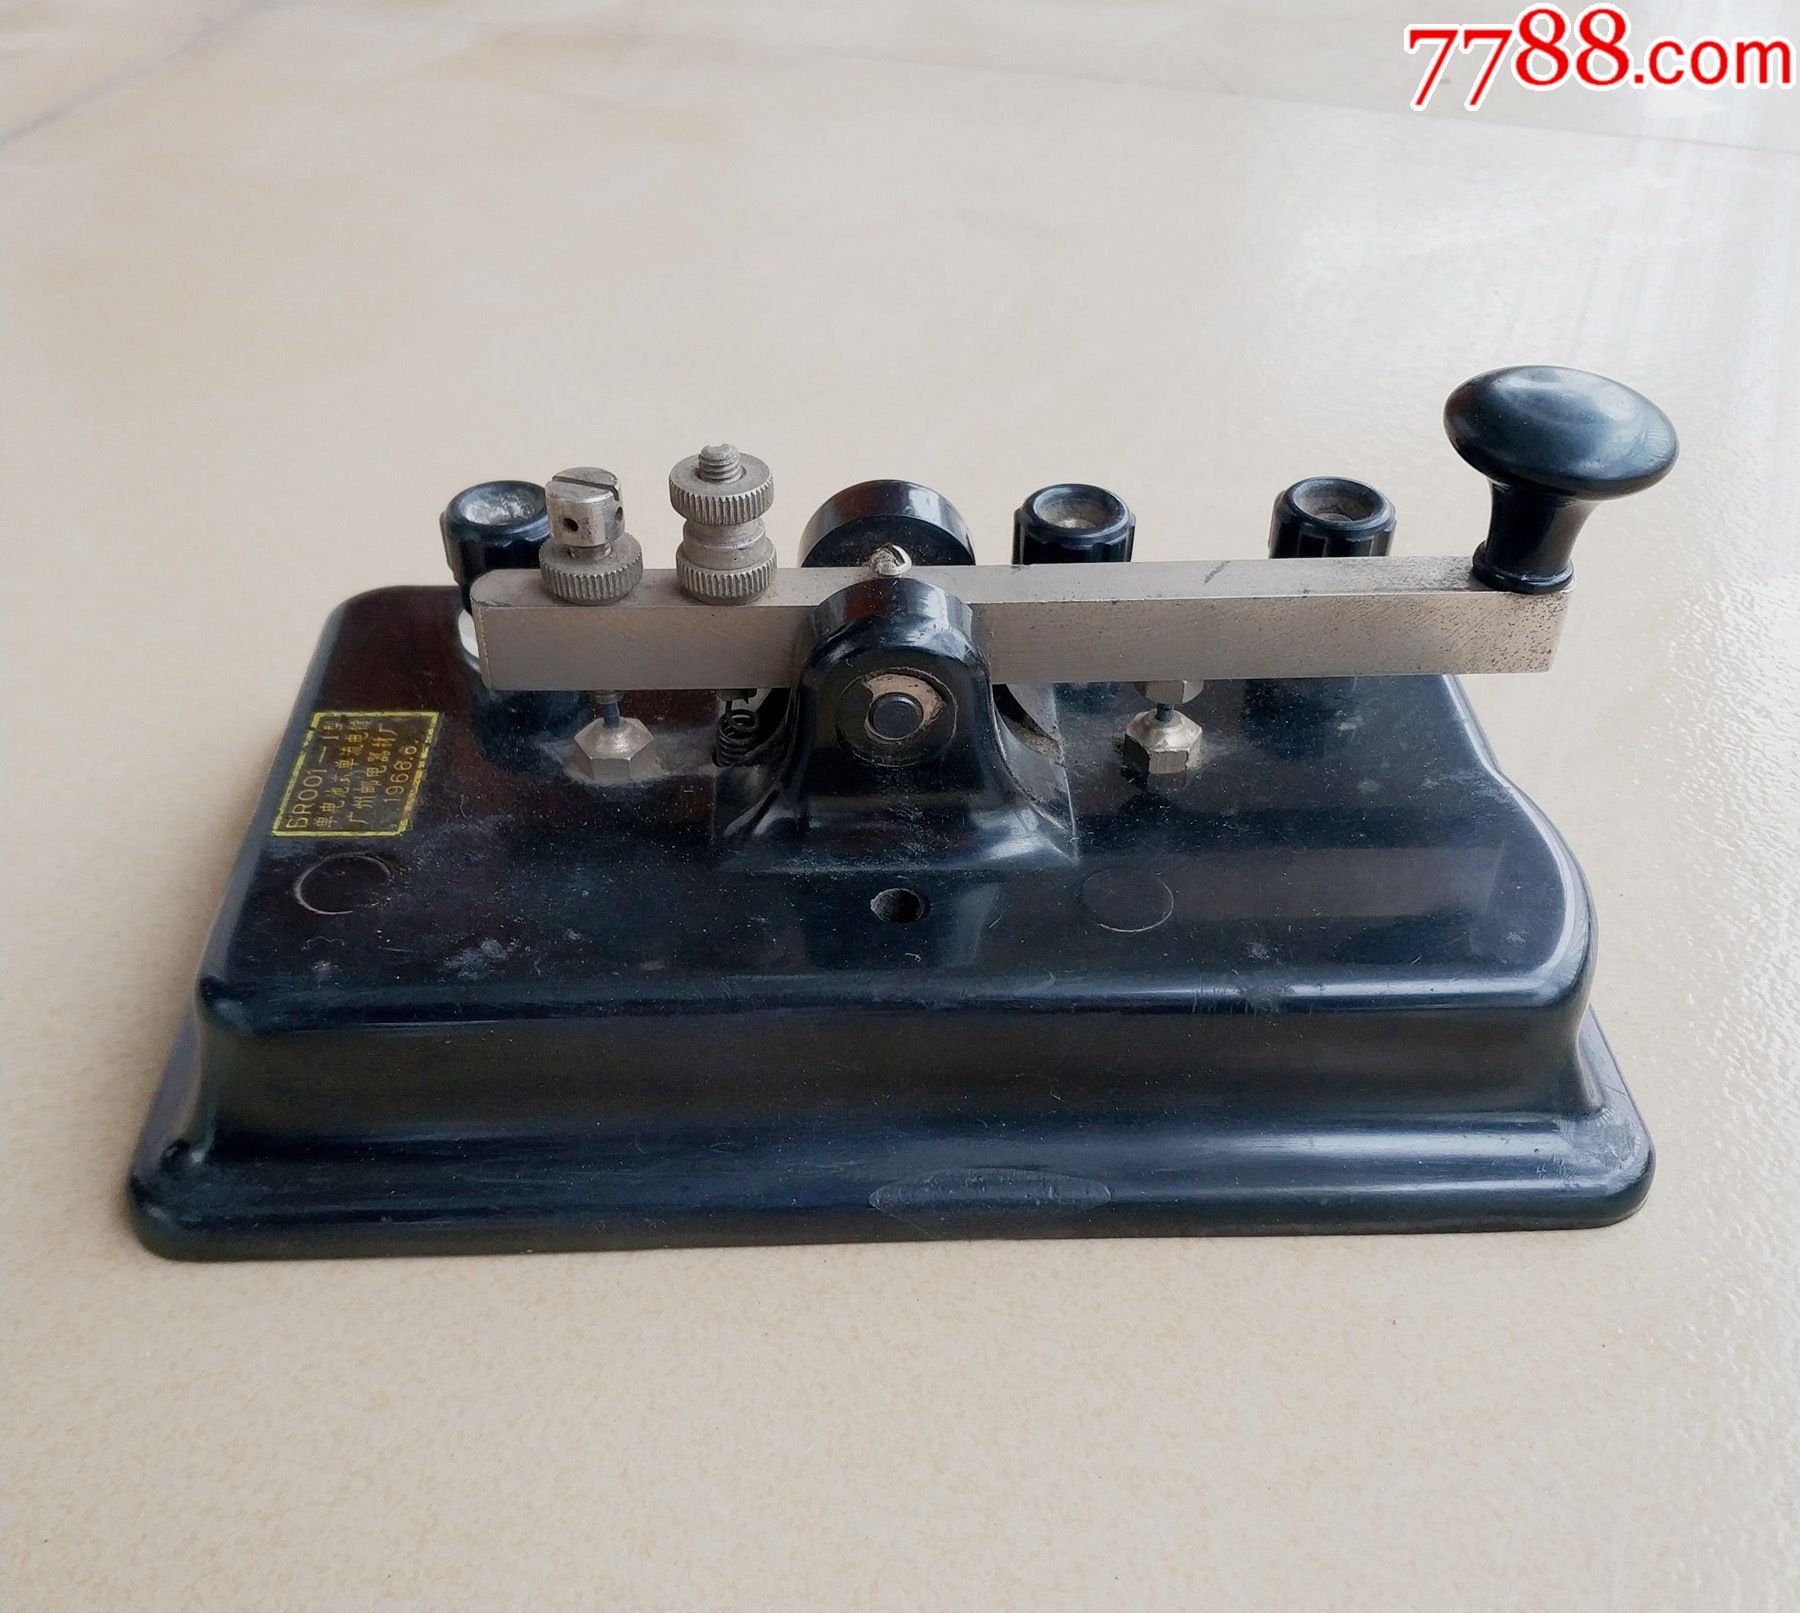 老电键,大型电键,广州本土生产电键,br001